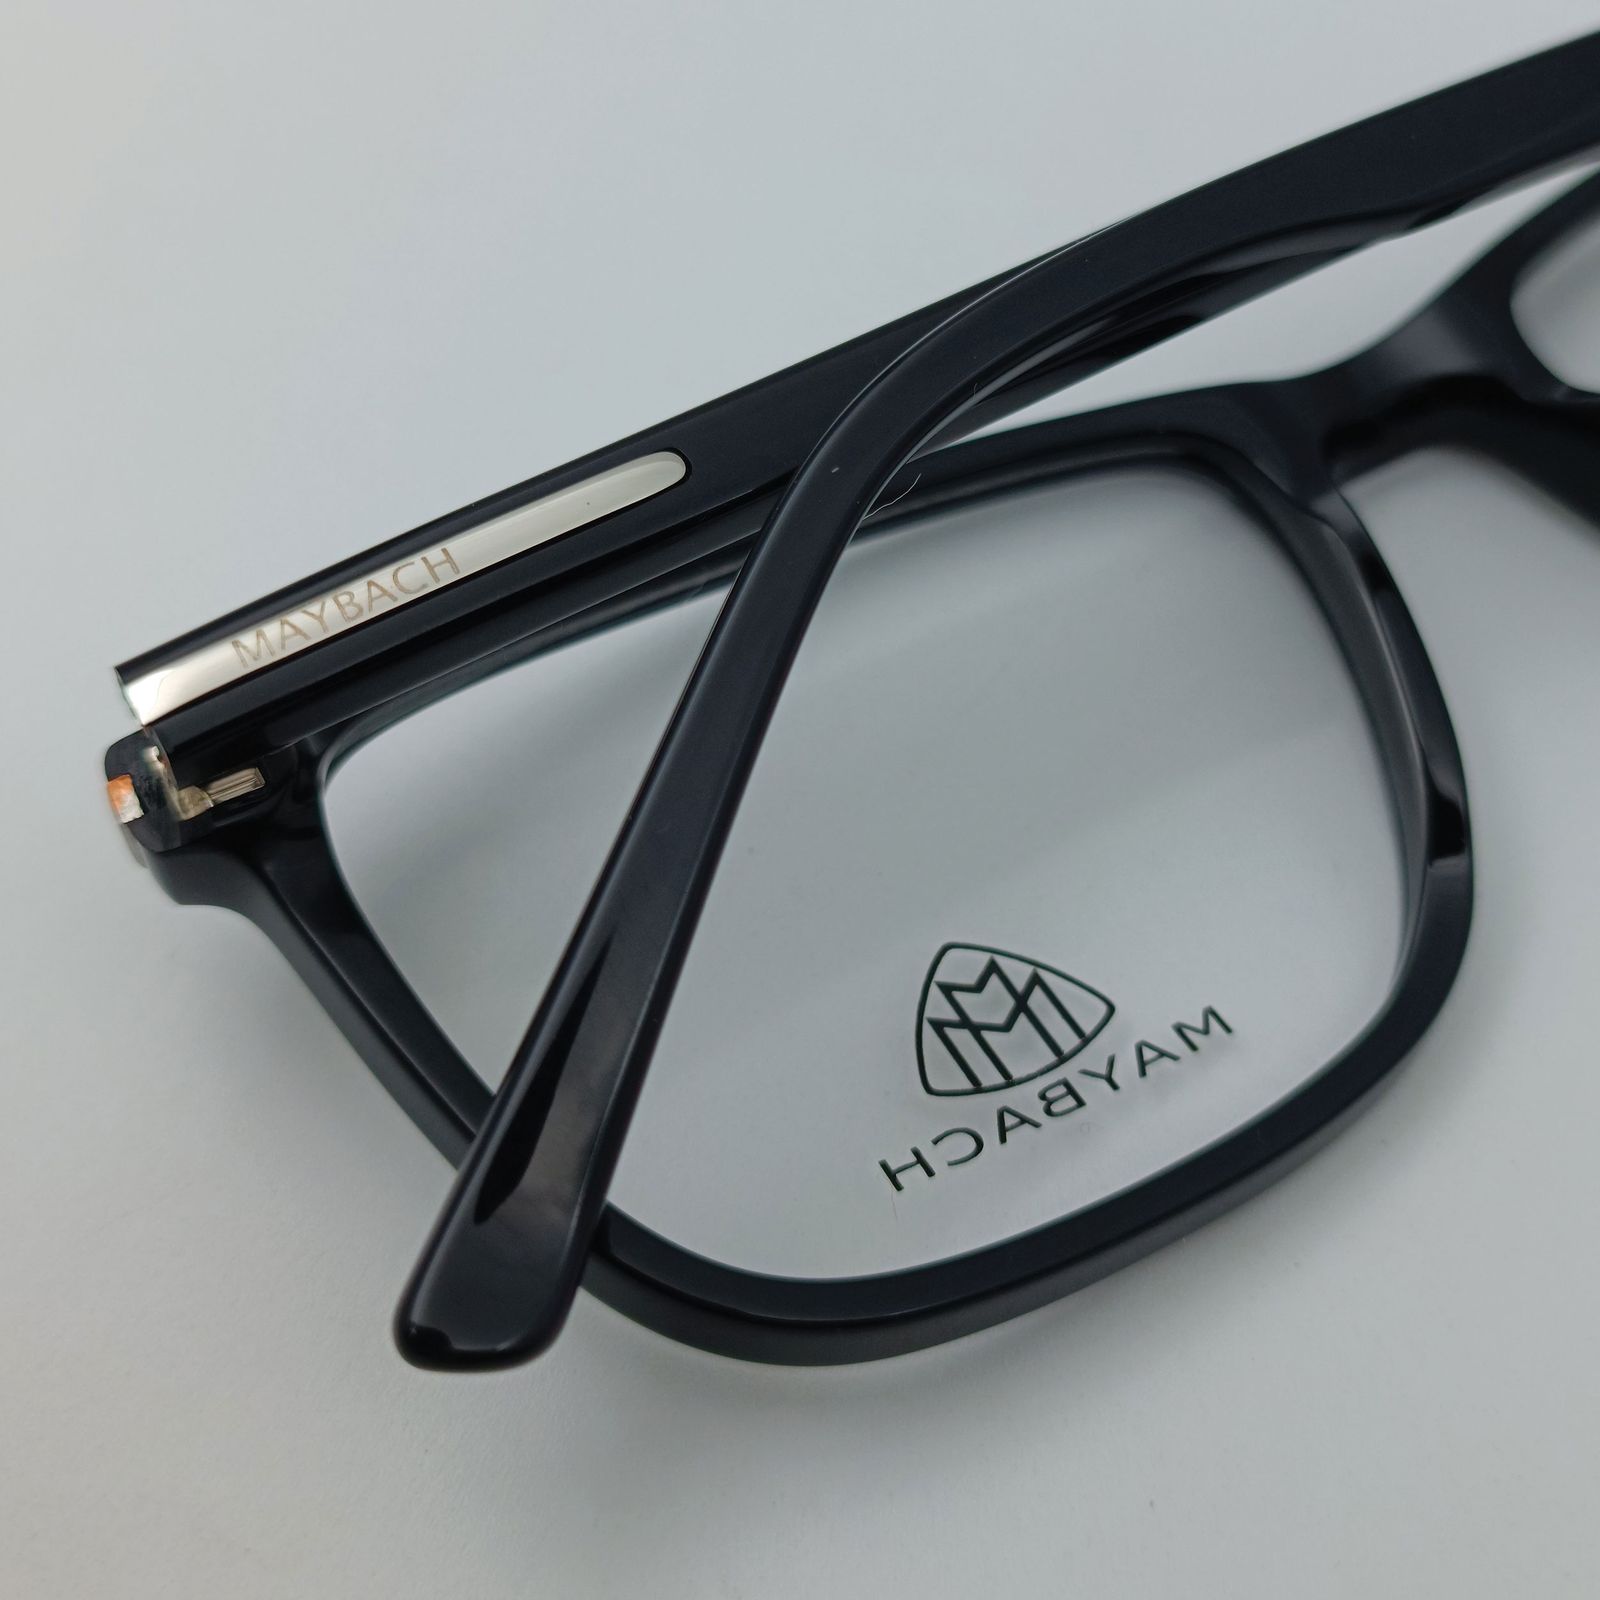 فریم عینک طبی میباخ مدل 6512 C1 -  - 11